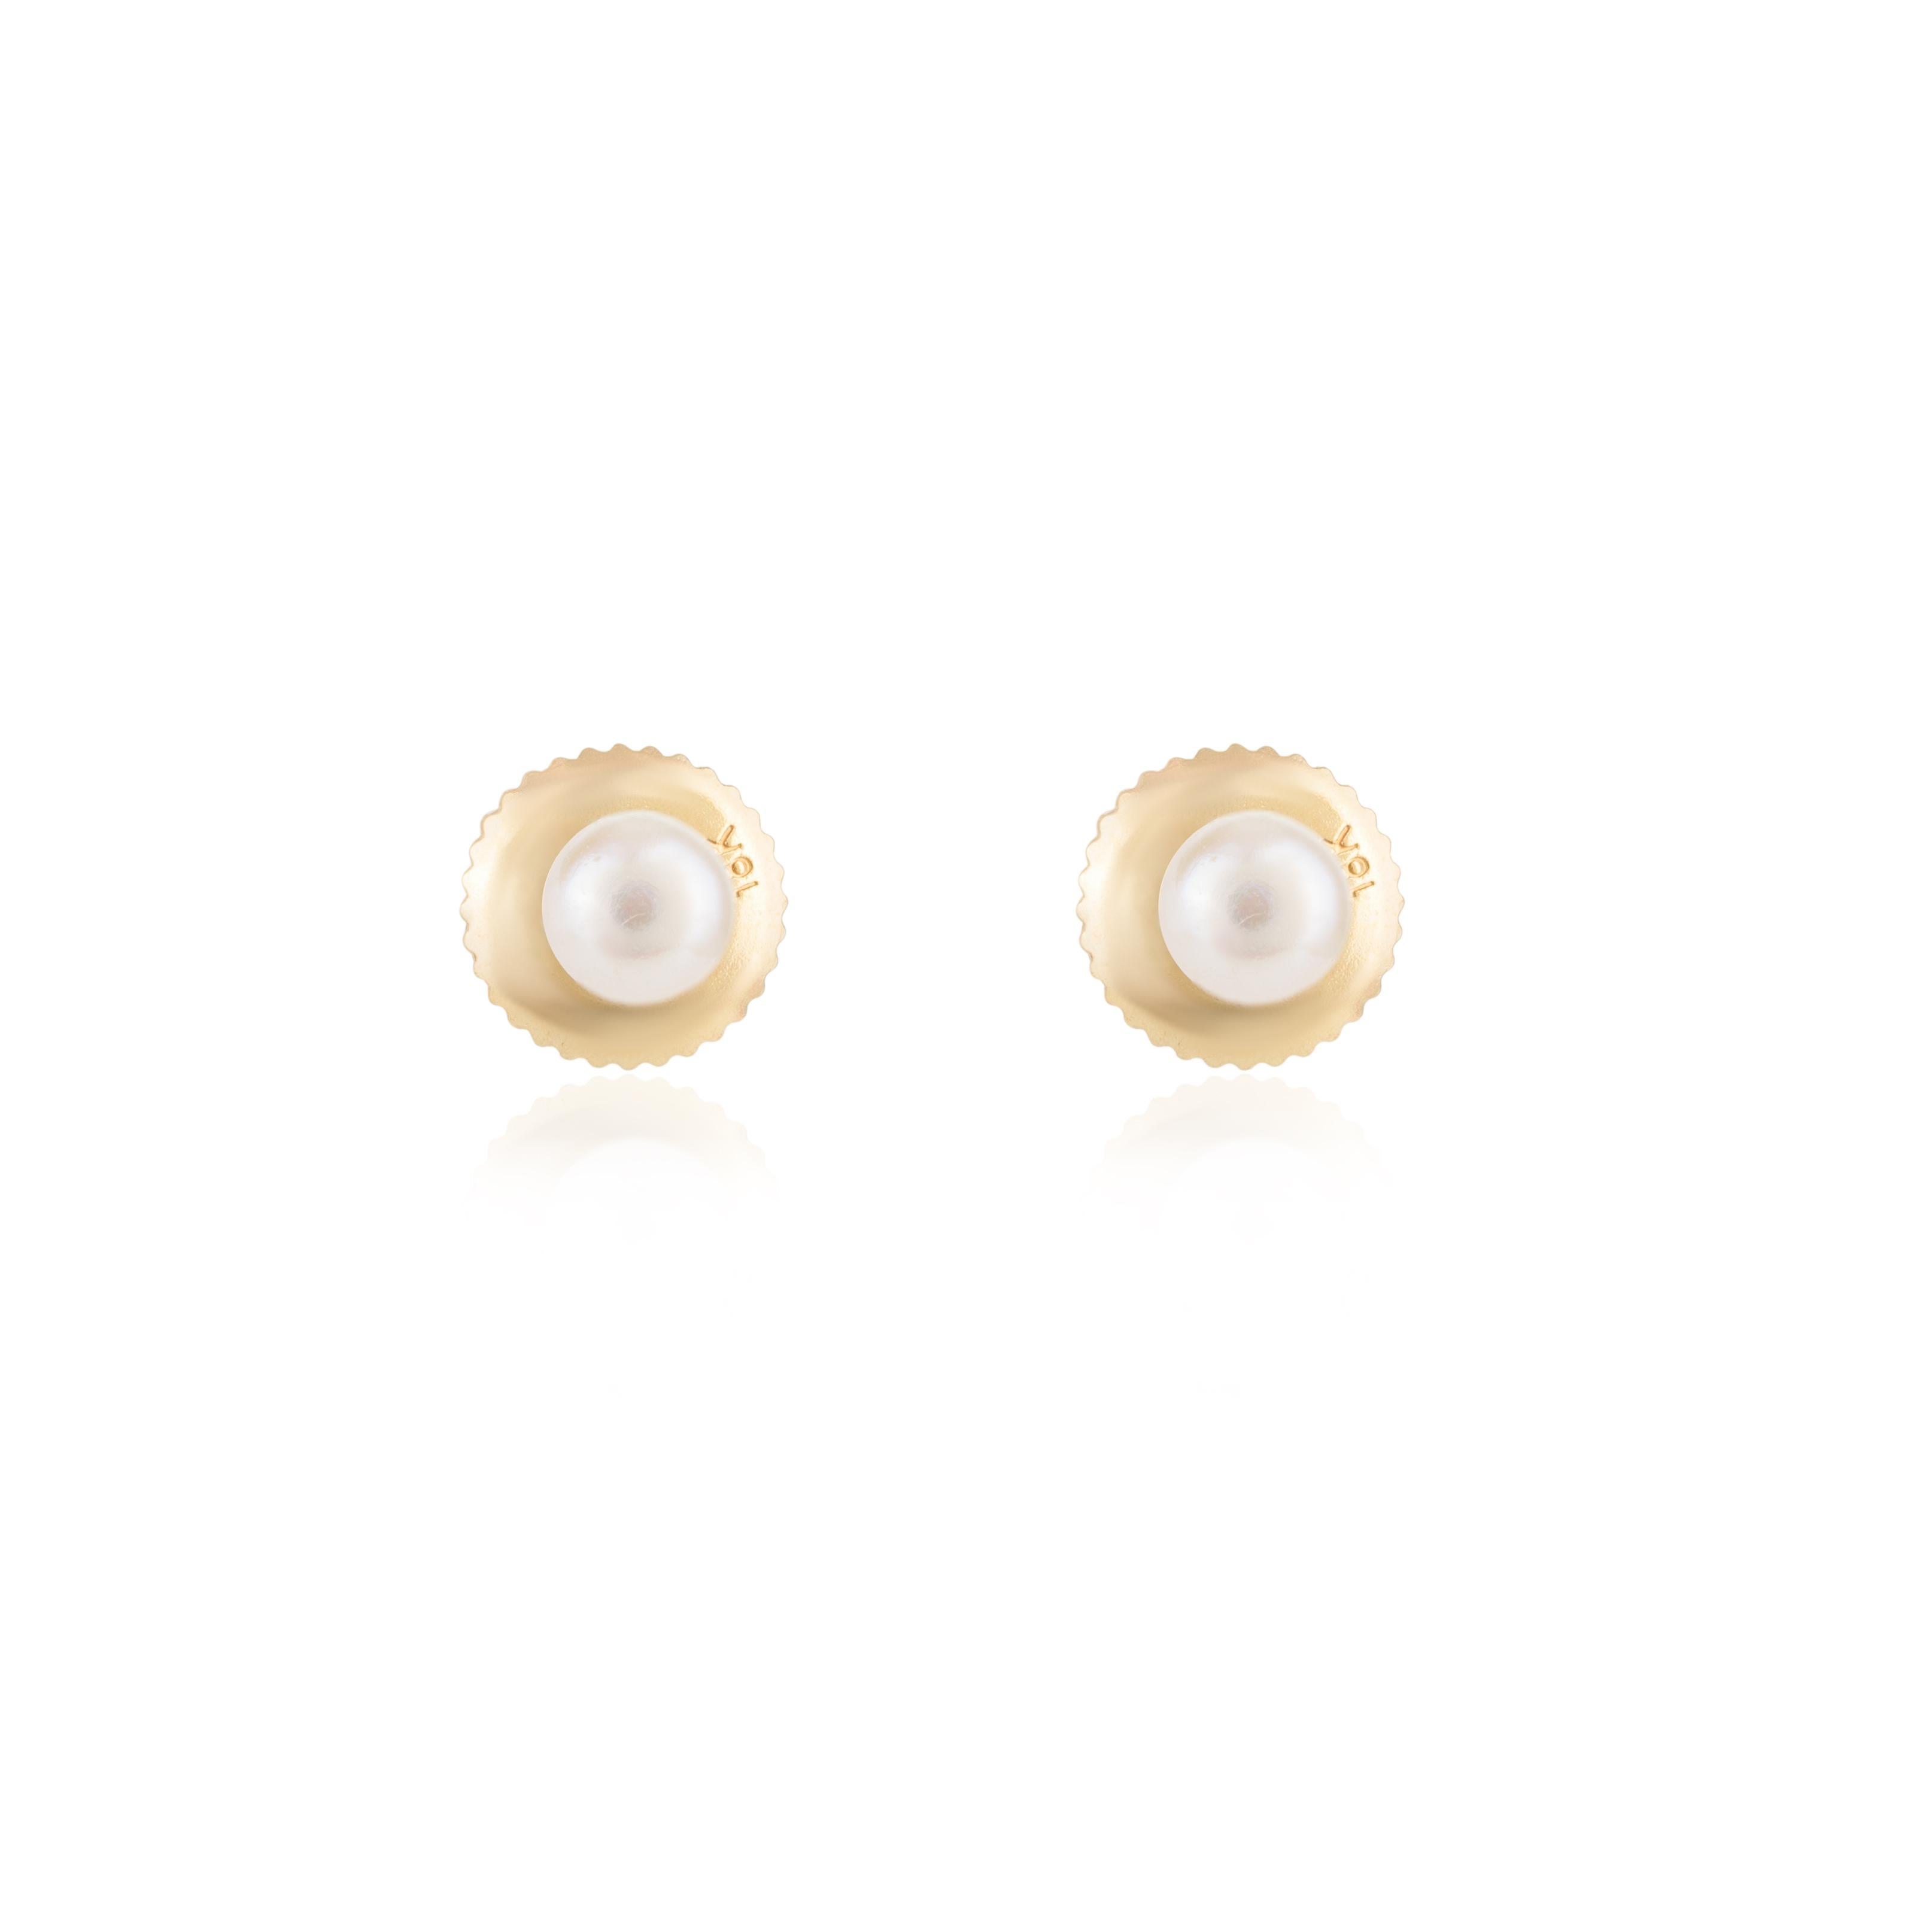 Zierliche alltägliche Perlenohrstecker in 18K Gold, die Ihren Look unterstreichen. Sie brauchen Ohrstecker, um mit Ihrem Look ein Statement zu setzen. Diese Ohrringe mit rund geschliffener Perle sorgen für einen funkelnden, luxuriösen Look.
Die